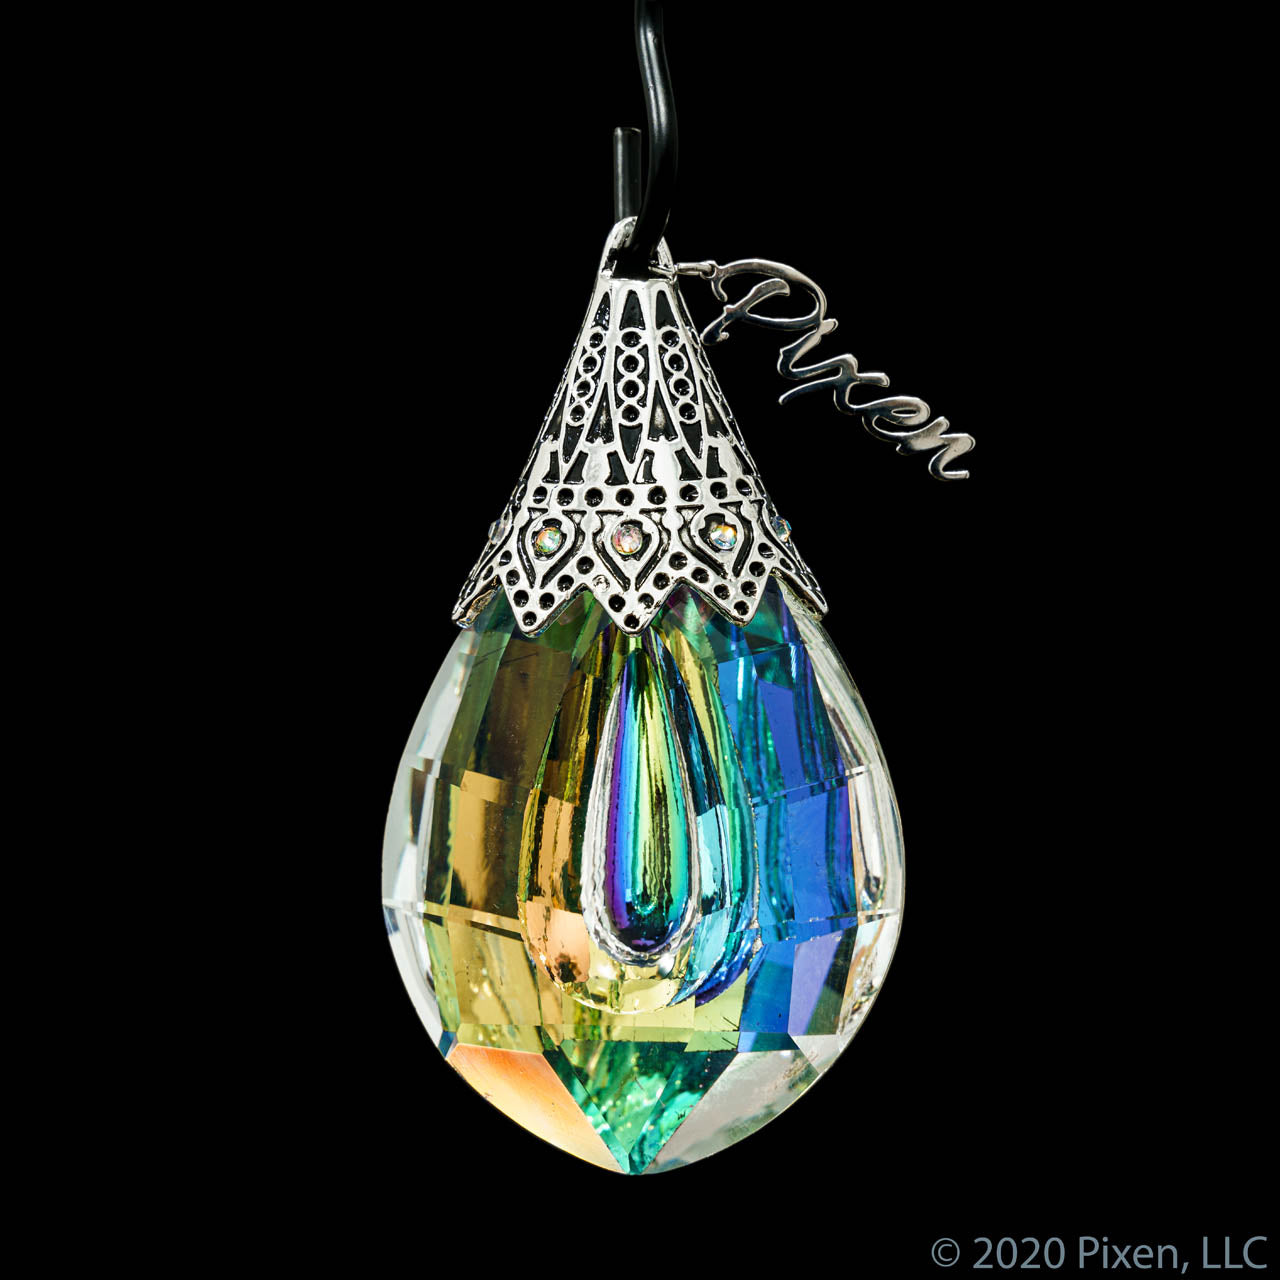 Kyle Krystal, a crystal ornament by Pixen